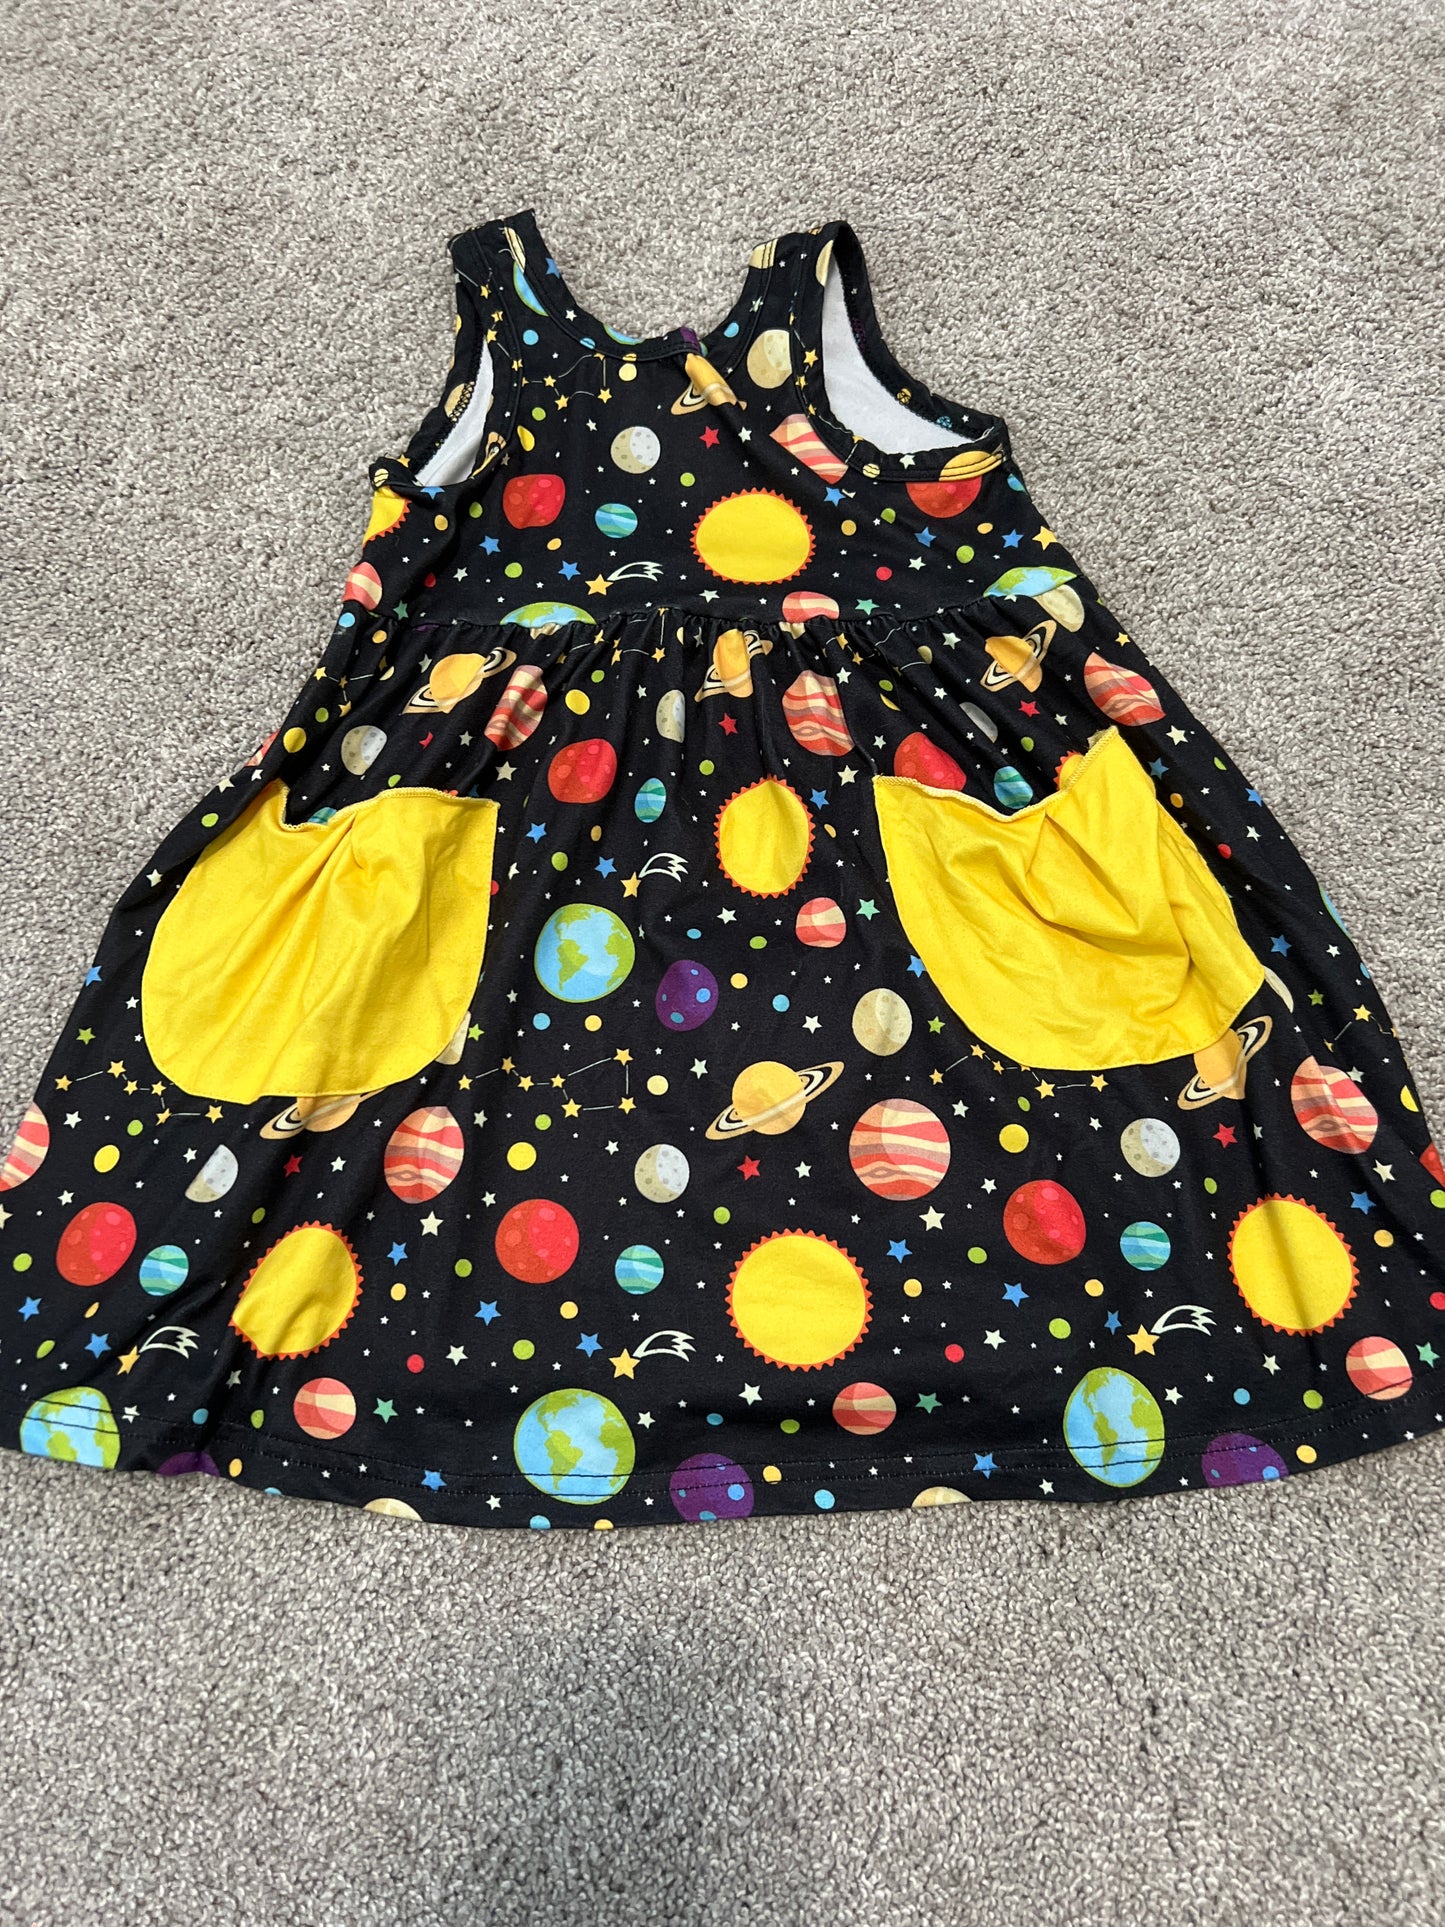 Girls Space/Galaxy Dress 3T PPU Madeira